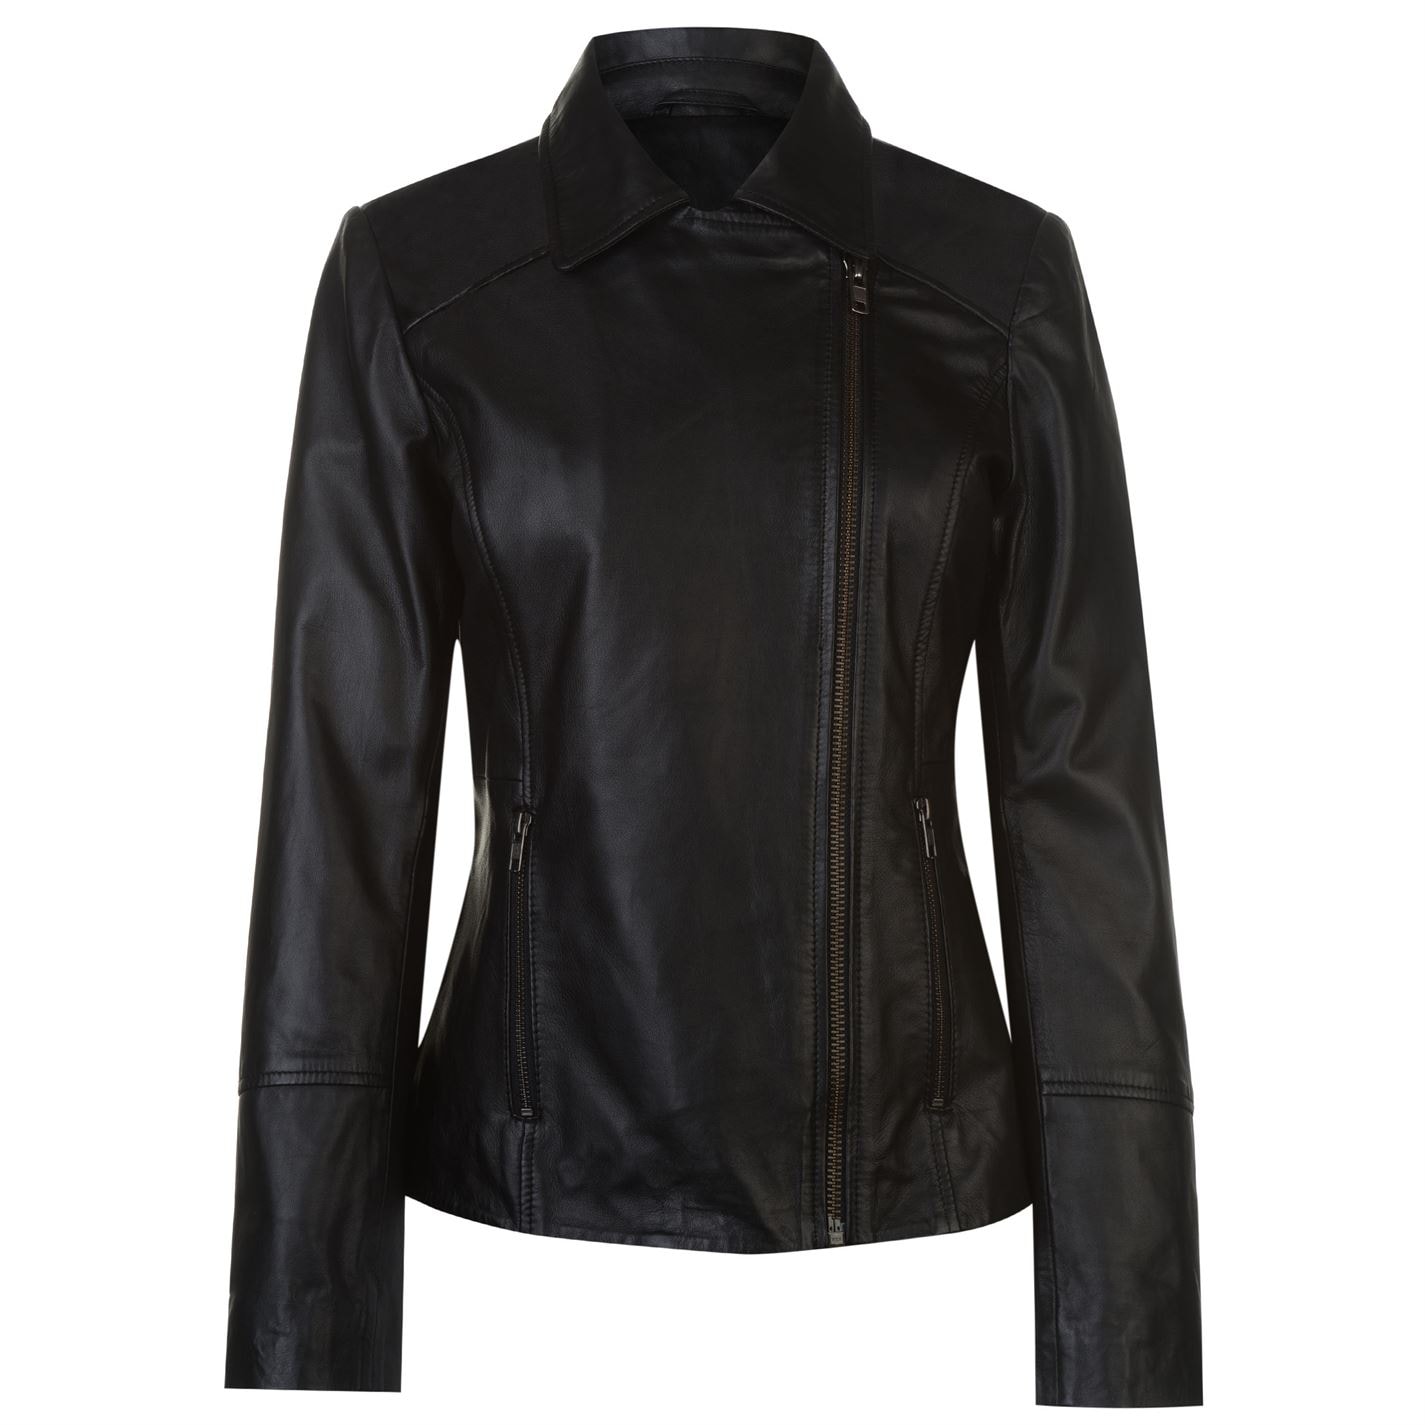 Levně Firetrap Blackseal Embroidered Leather Jacket